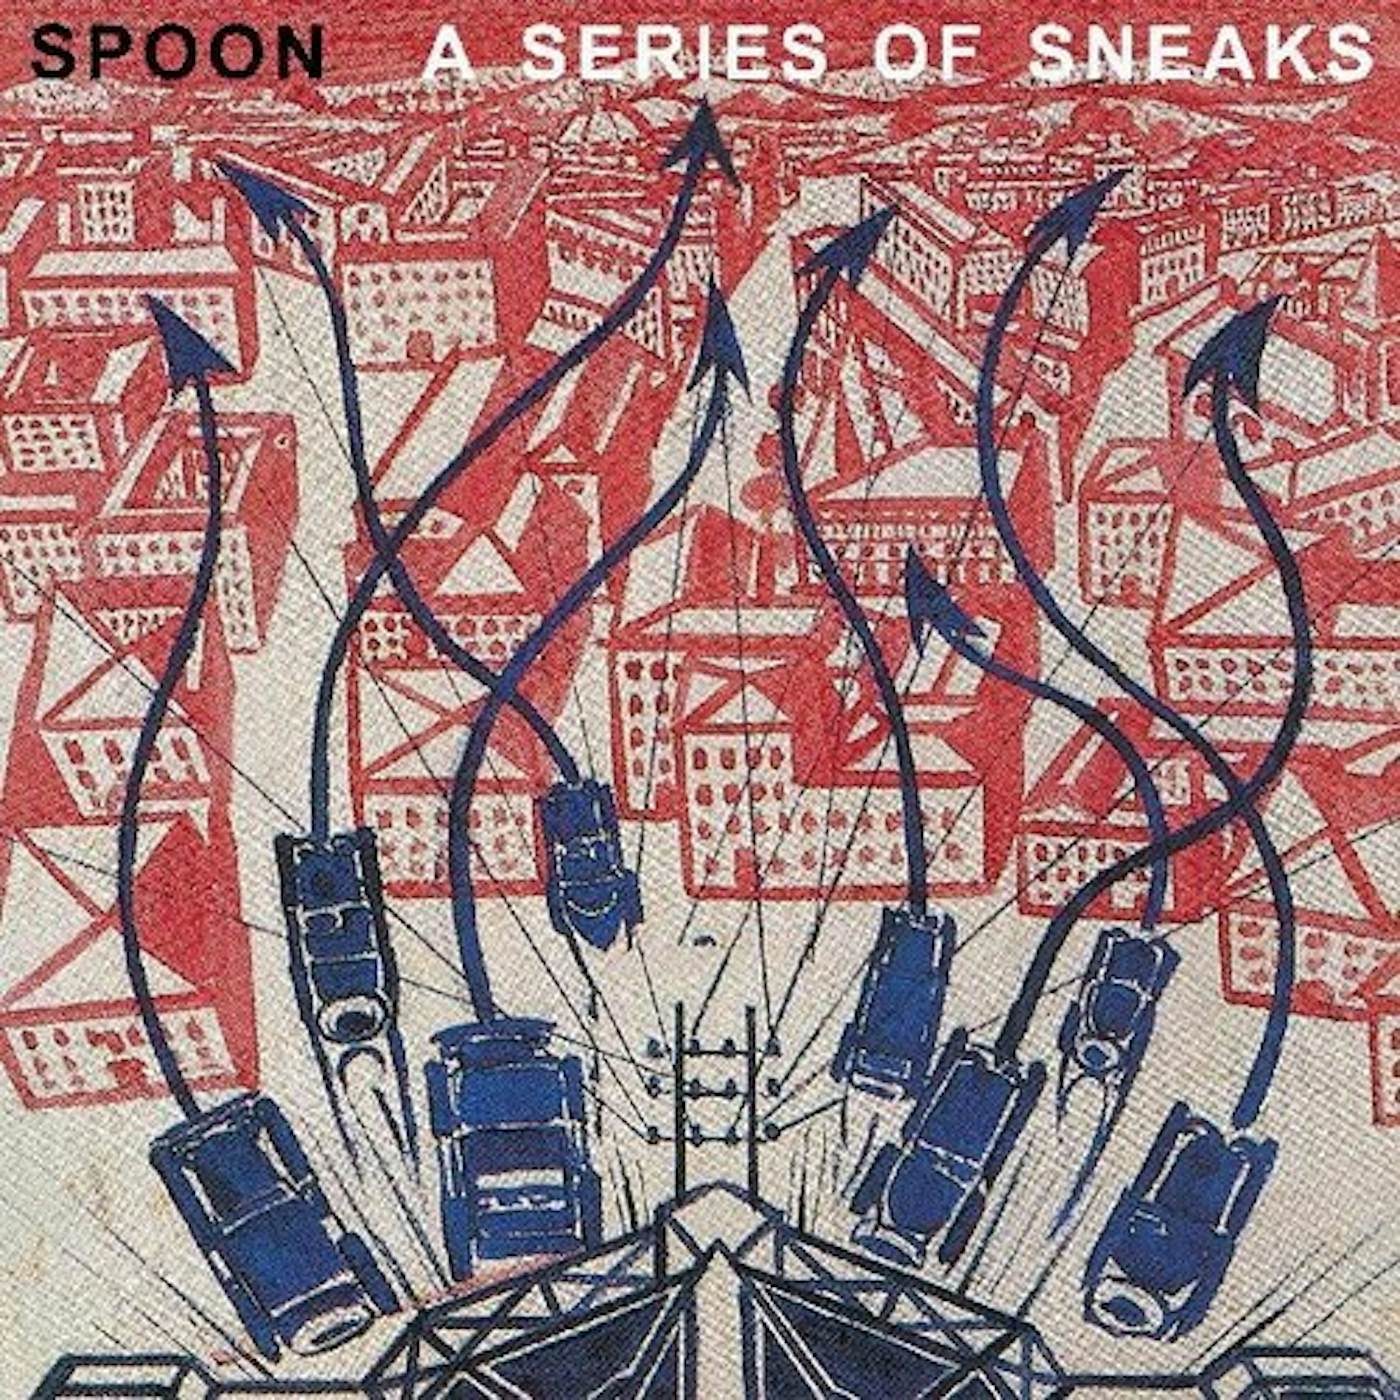 Spoon SERIES OF SNEAKS Vinyl Record